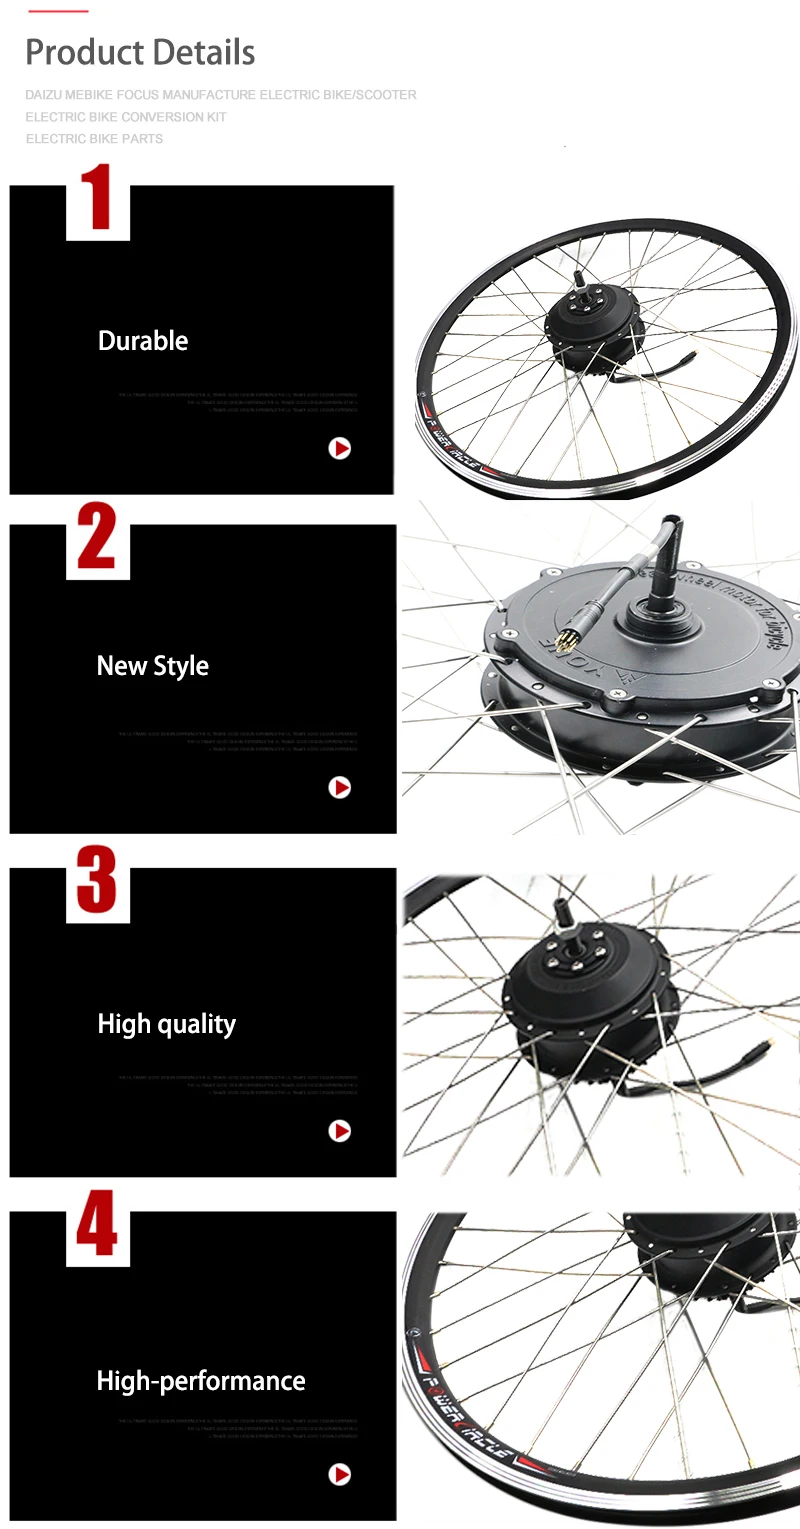 48V 500 W/1000 Вт электромотором задних колес 6 7 Скорость Кассетный Маховик, фара для электровелосипеда в Conversion Kit MTB велосипед BMX Запчасти Аксессуары для велосипеда